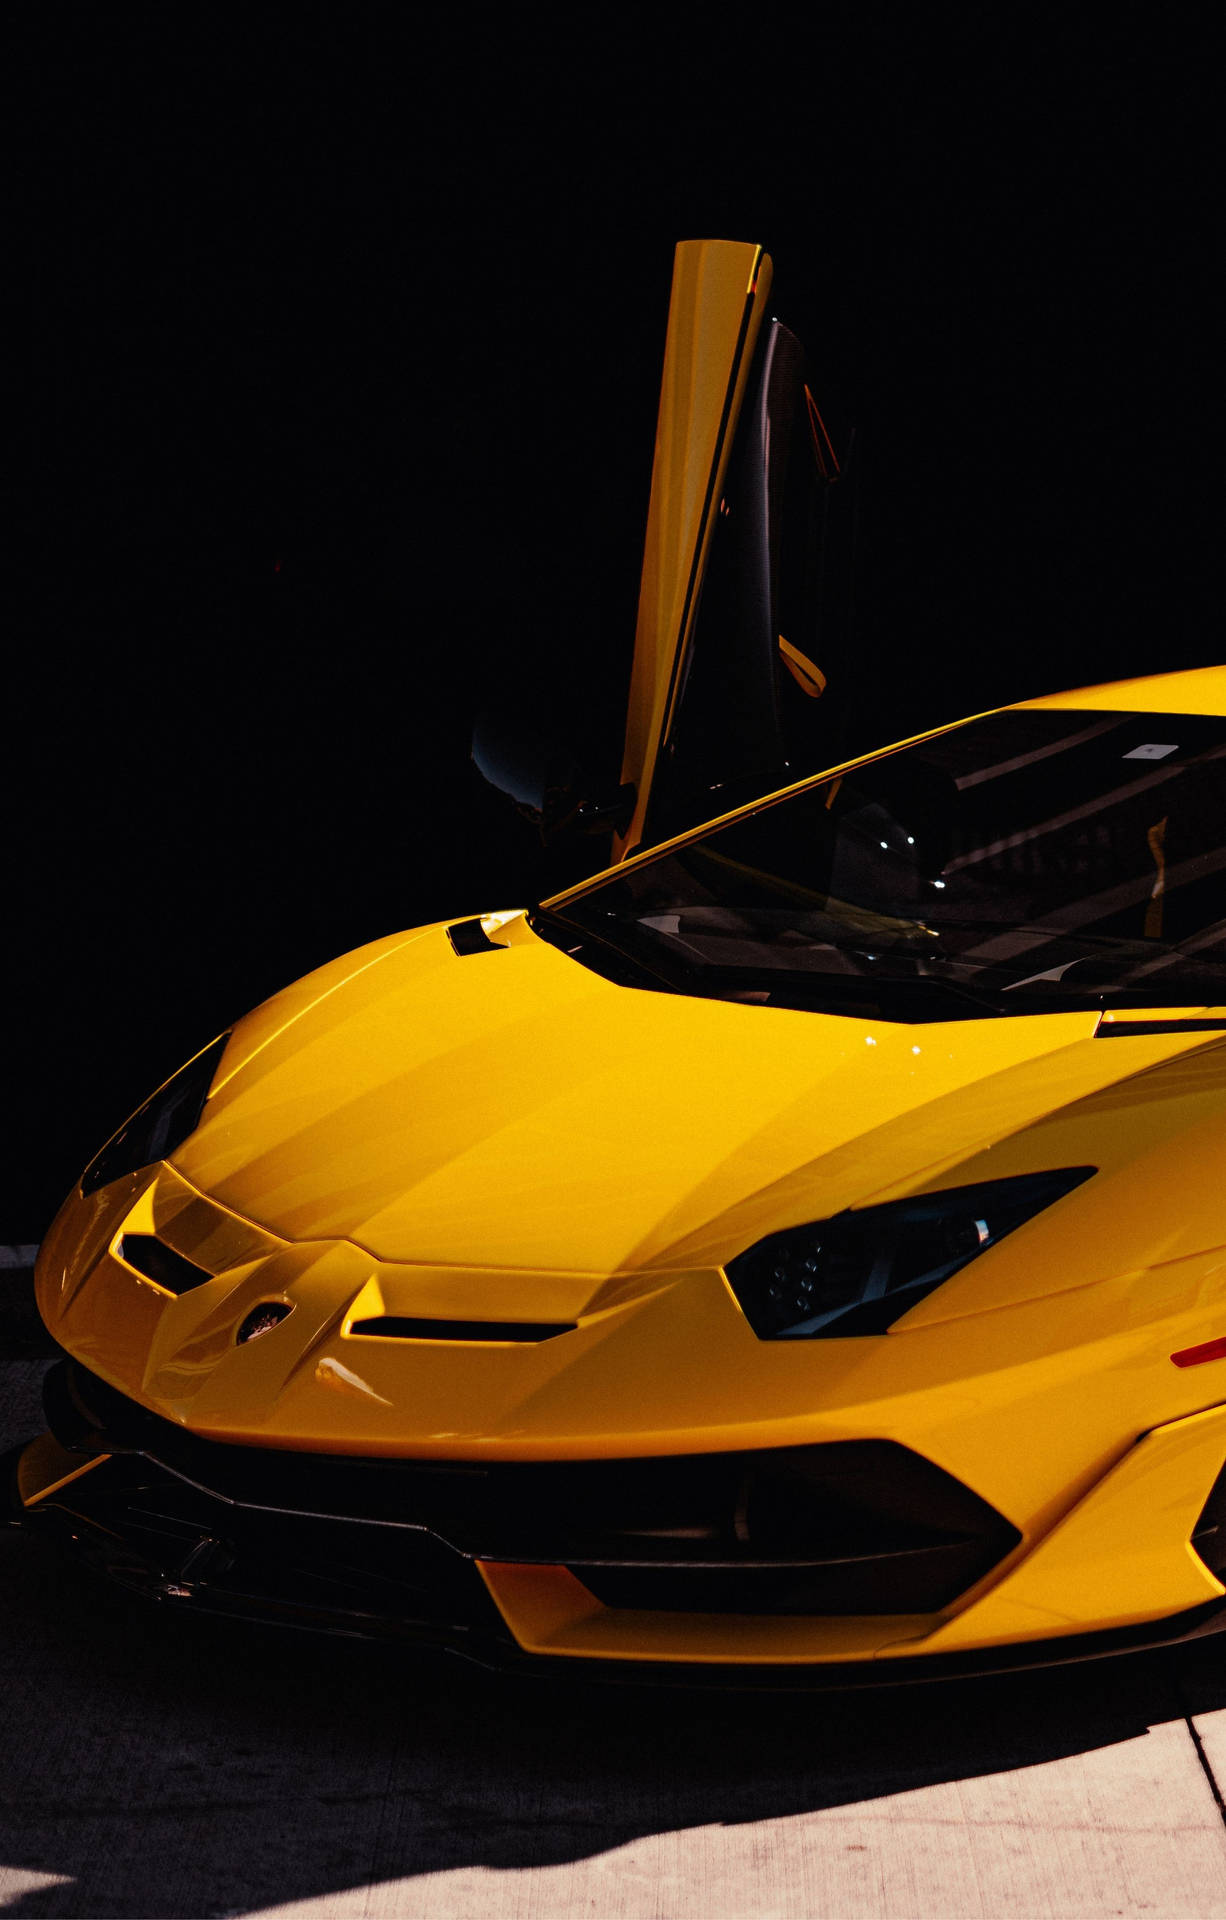 4k Lamborghini Iphone 2587 X 4050 Wallpaper